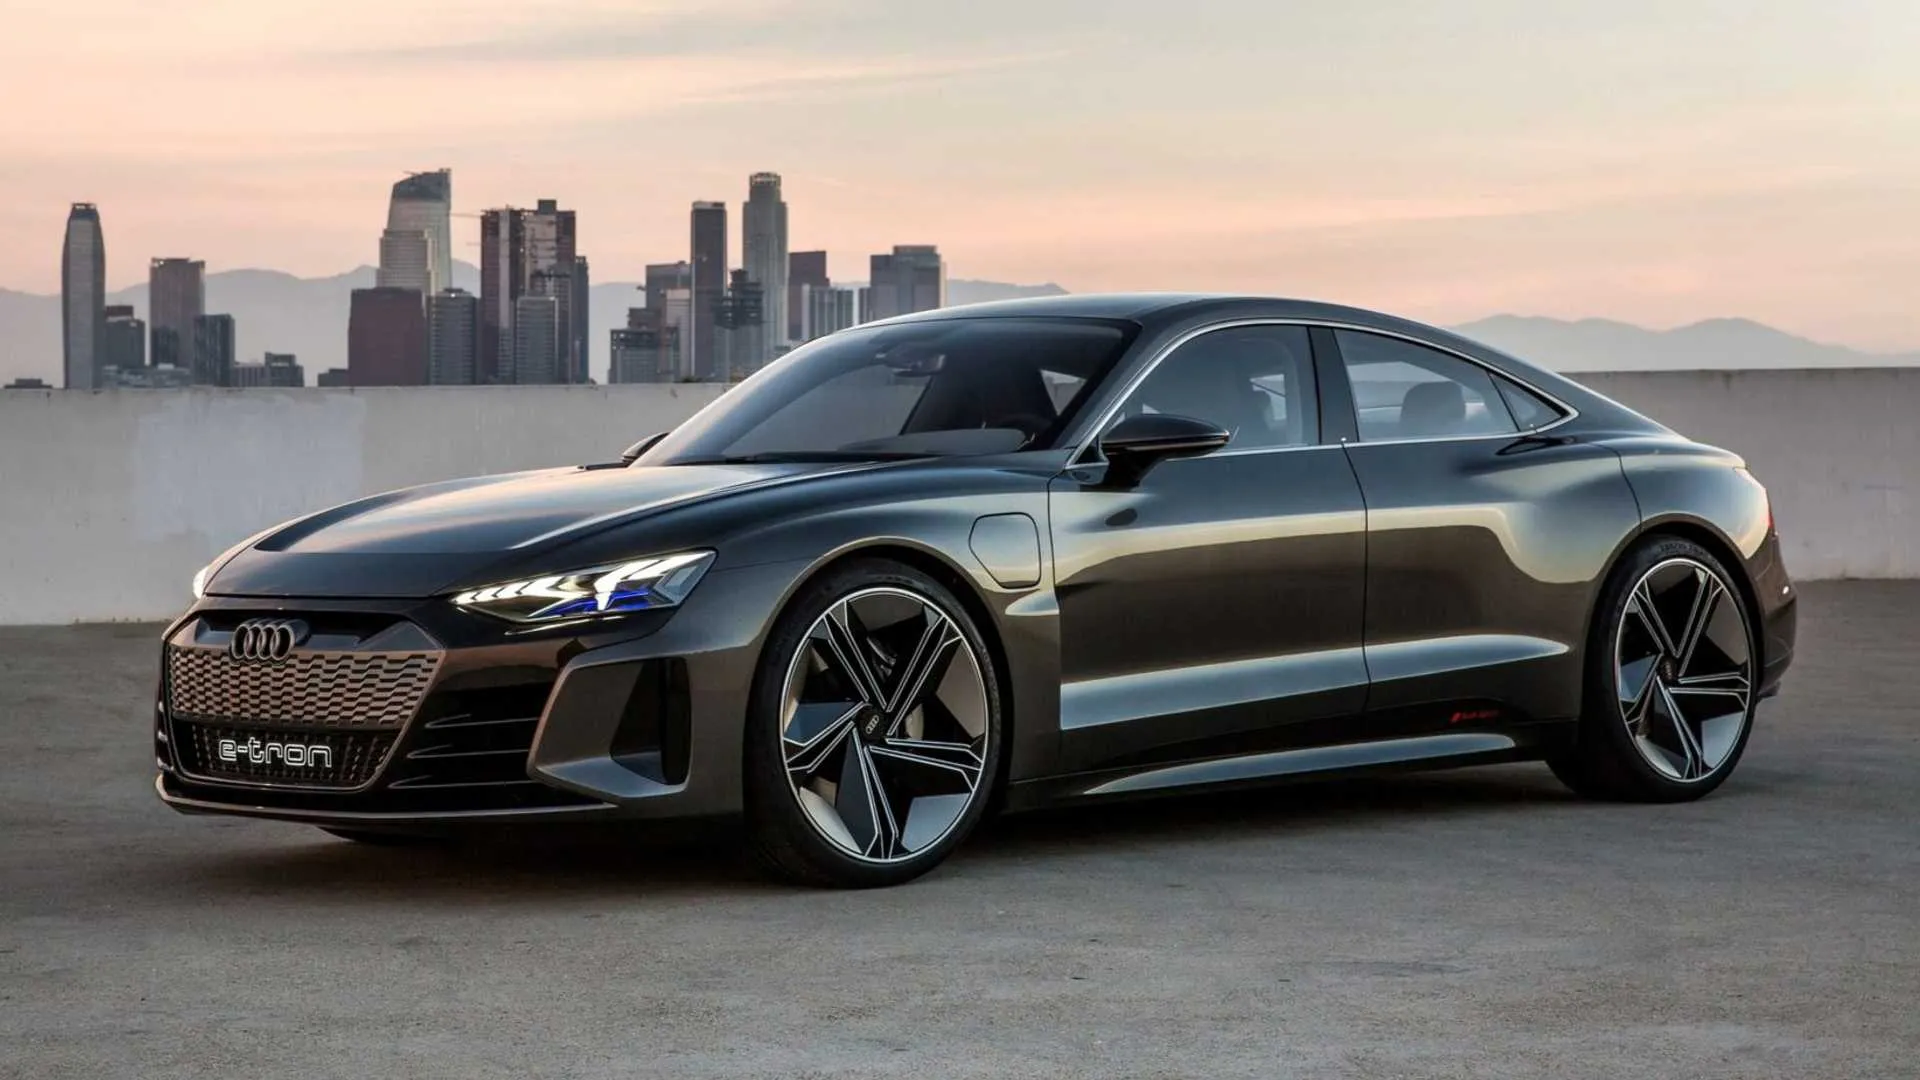 Az Audi piacra dobta e-Tron GT-jét, egy gyönyörű elektromos autóját, amelyet a Teslával való versenyre terveztek, 100,000 XNUMX dolláros alapárral.